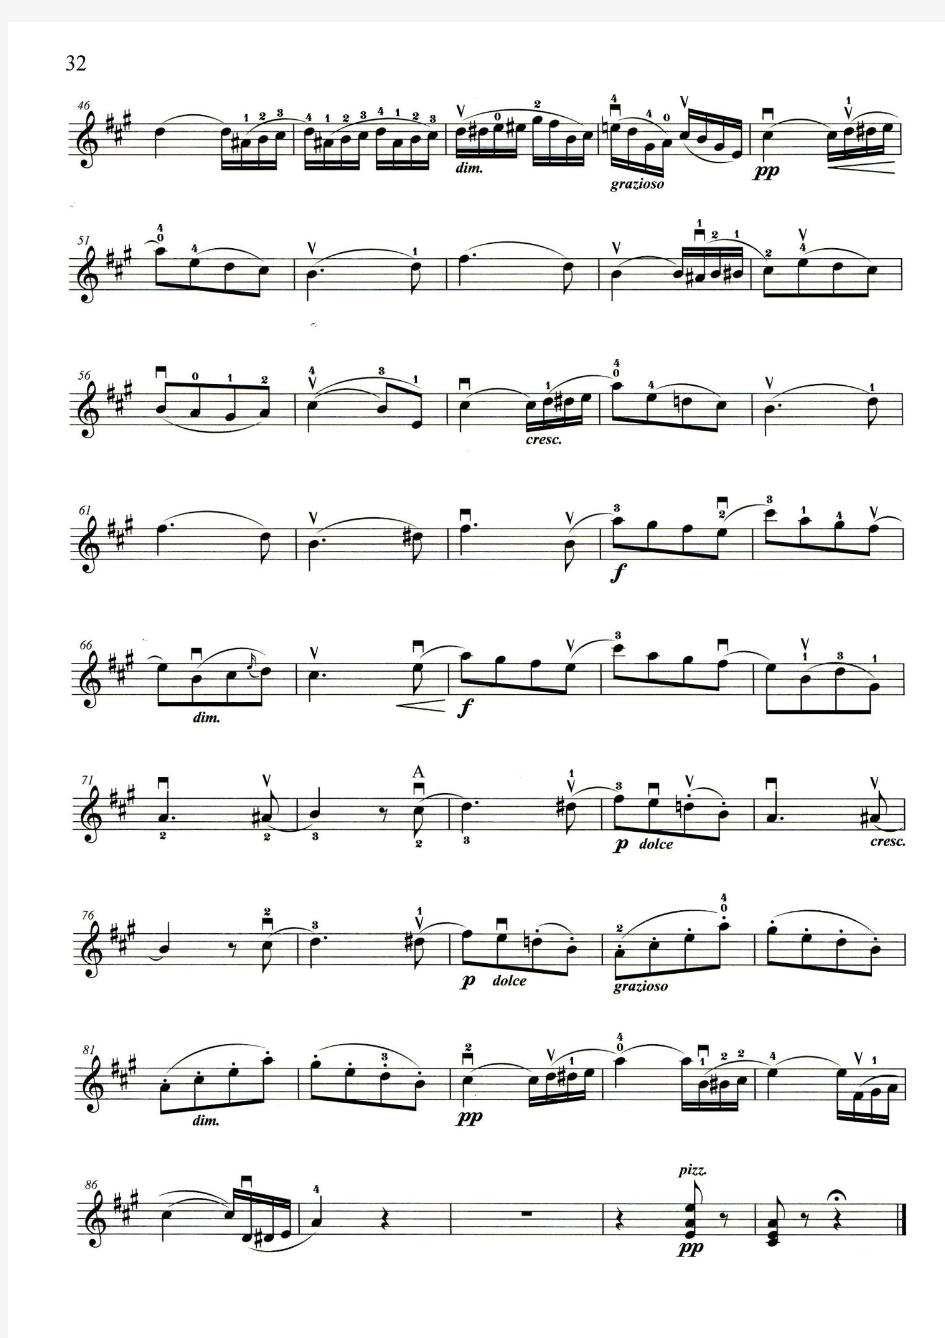 2015年小提琴四级考级自选曲目-春之歌